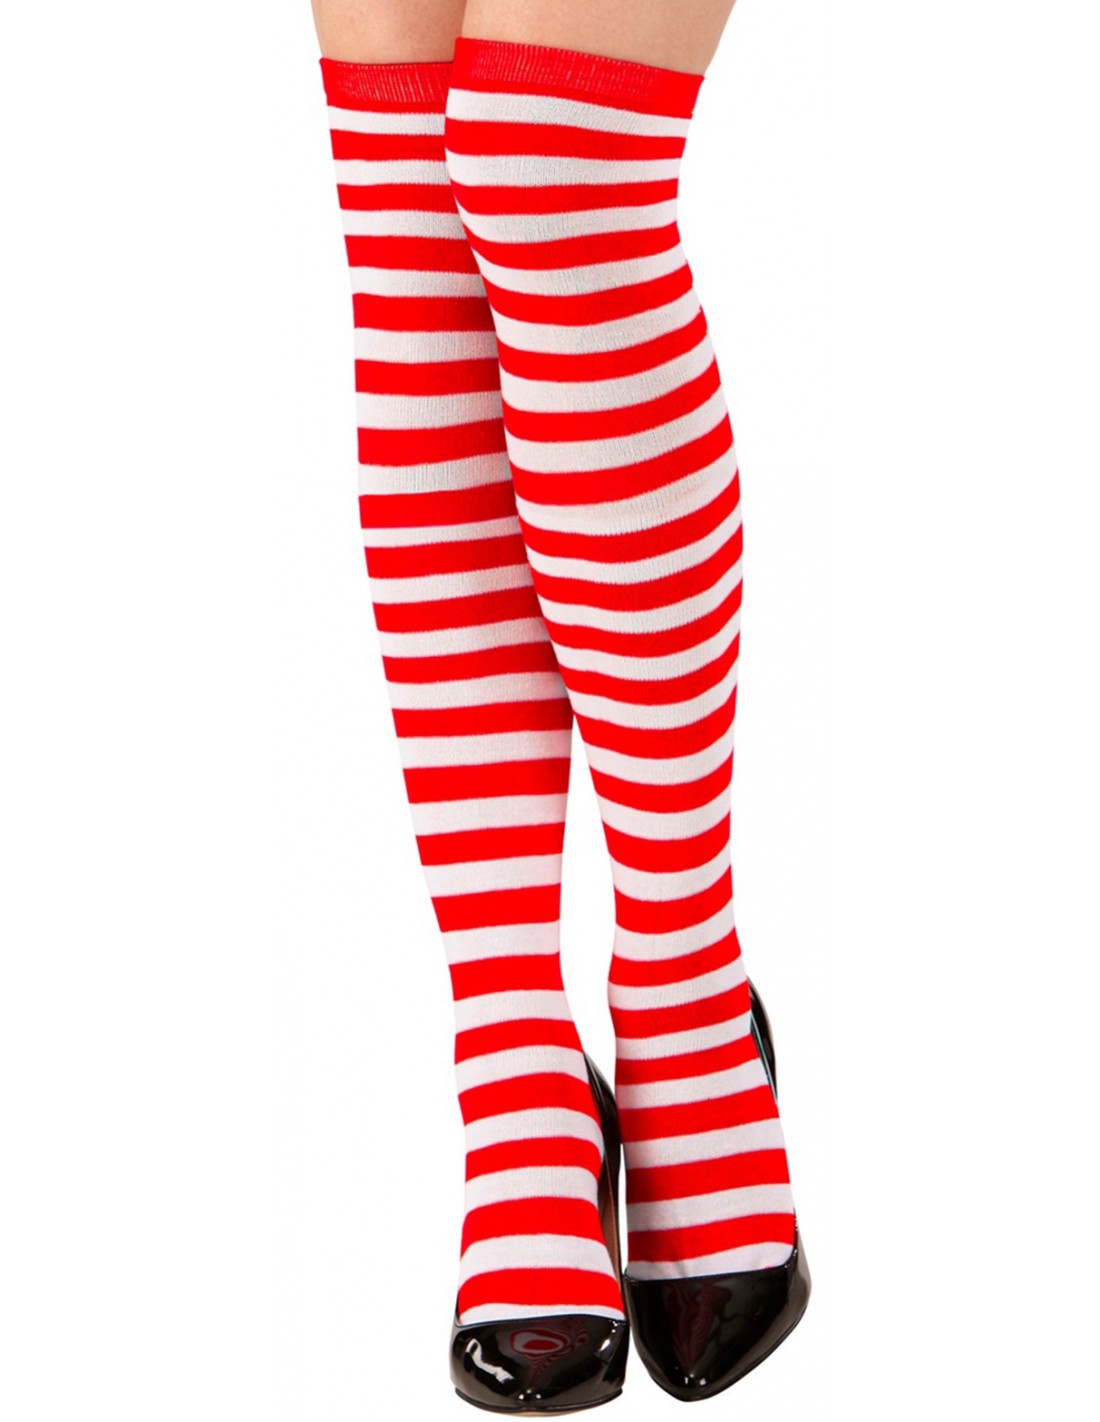 Calcetines rayas rojas/blancas  Comprar telas por metros online a